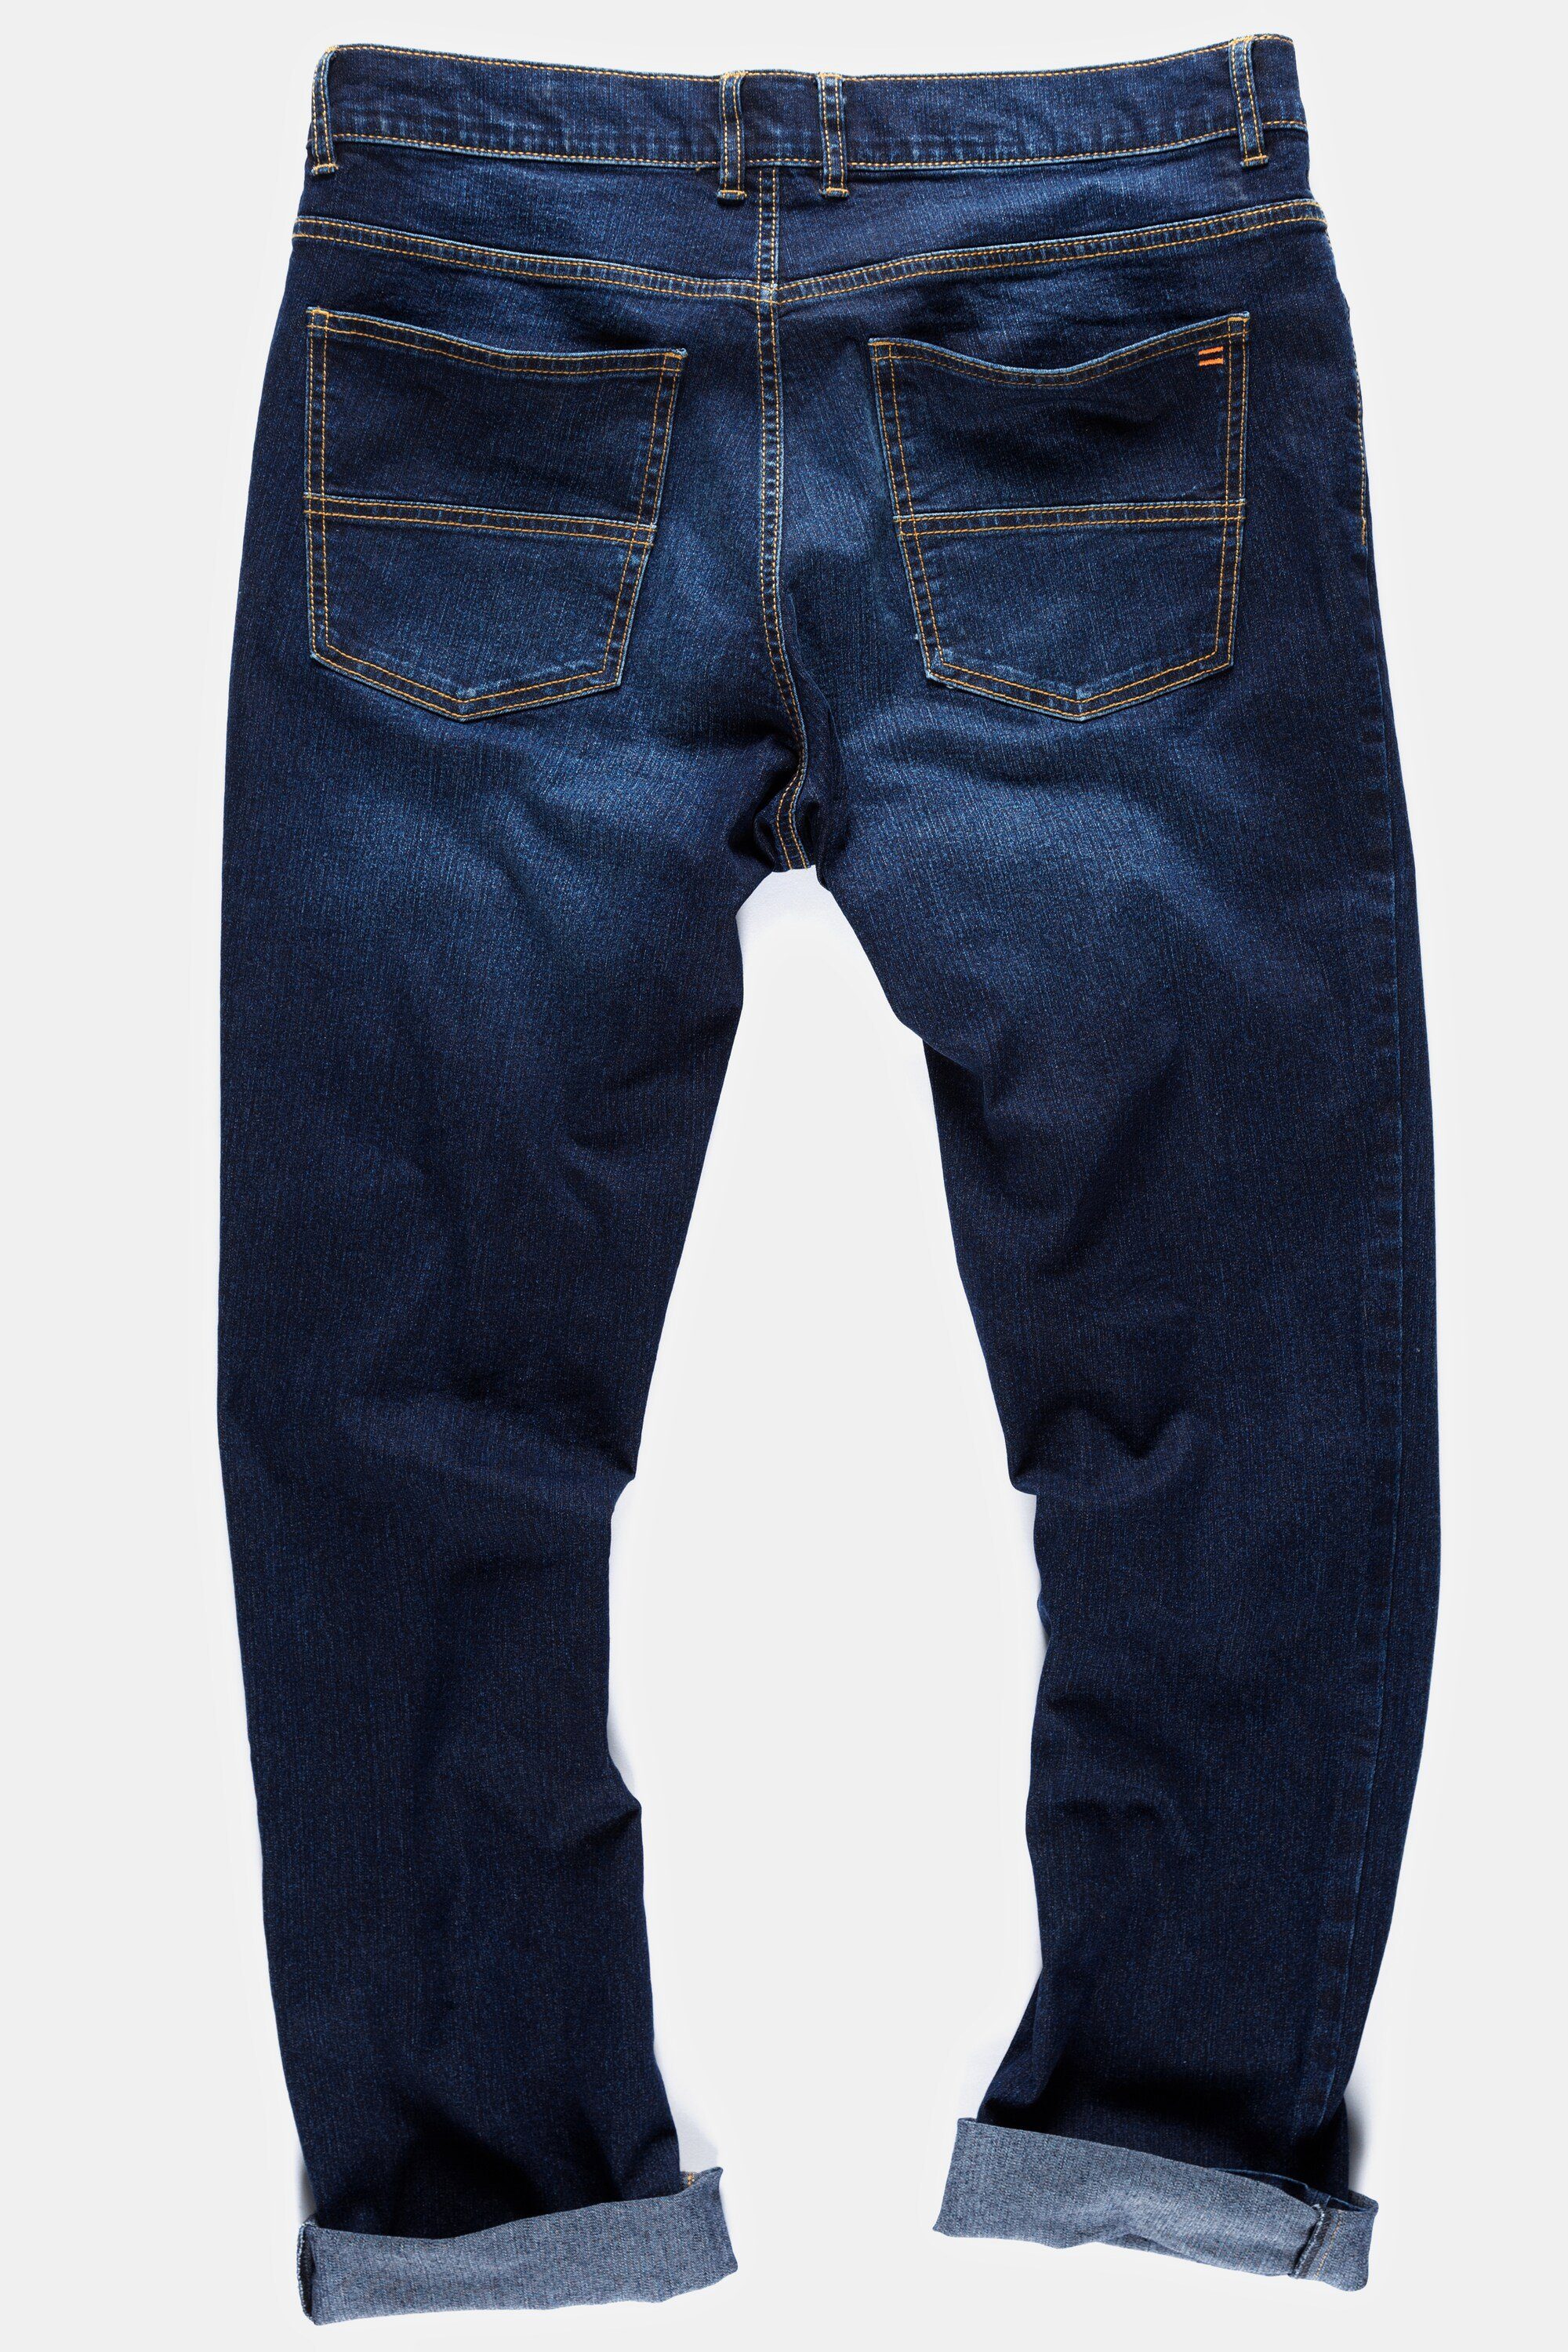 Pocket Regular Bauch STHUGE 5 Jeans STHUGE blue Fit denim dark 5-Pocket-Jeans Fit